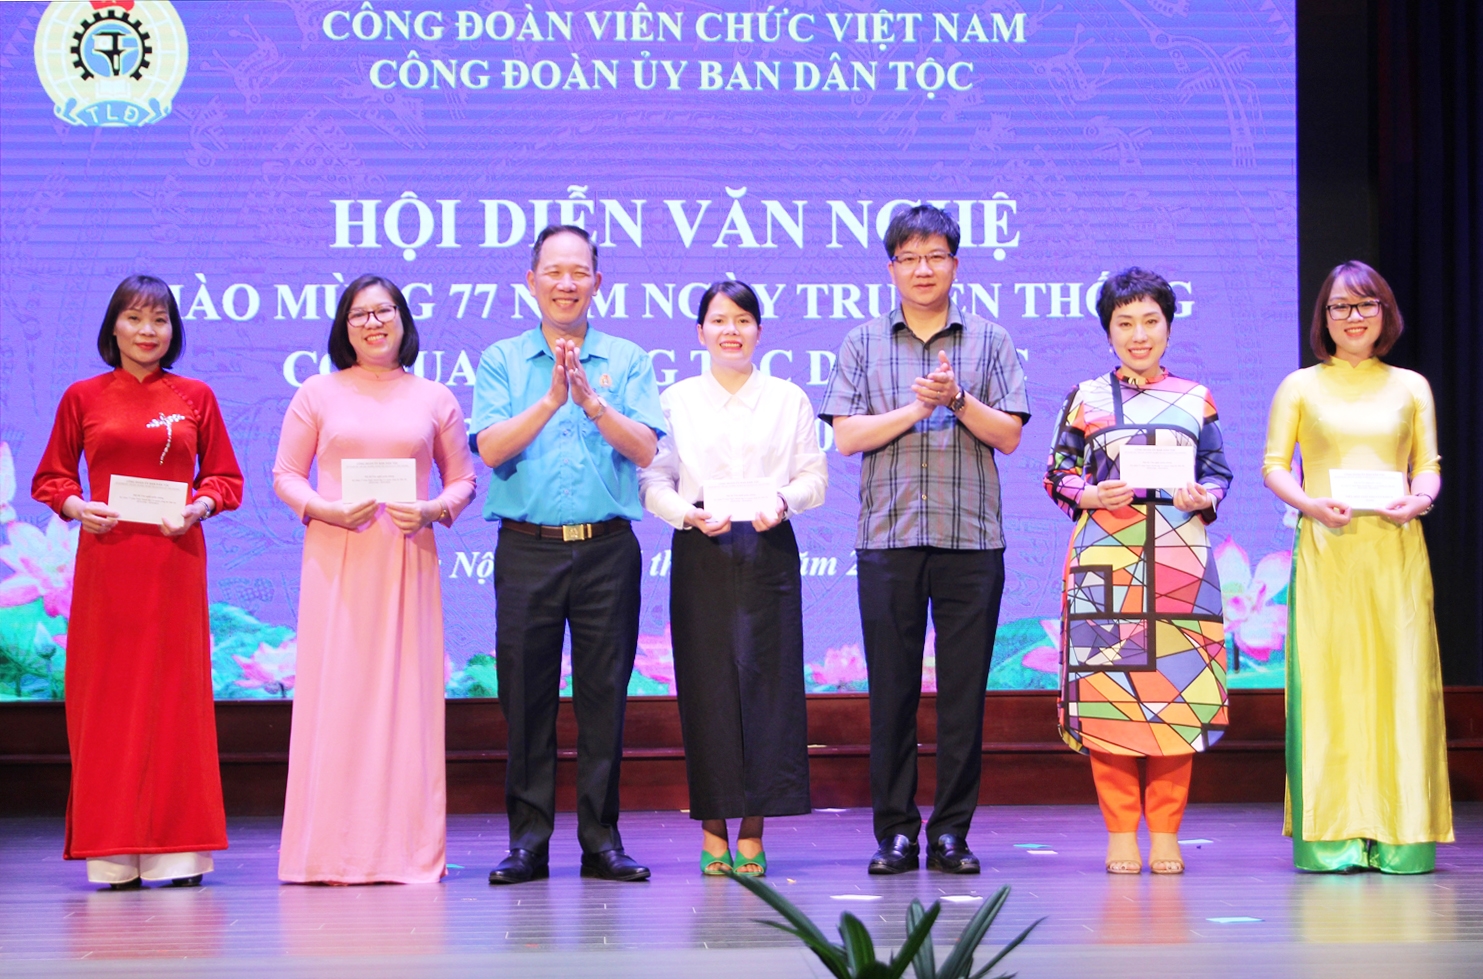 Ông Nguyễn Quang Hải - Chủ tịch Công đoàn UBDT, Tổng Biên tập Tạp chí Dân tộc và ông Nguyễn Chí Tuấn - Phó Vụ trưởng Vụ Pháp chế trao giải cho các đơn vị đạt giải ấn tượng